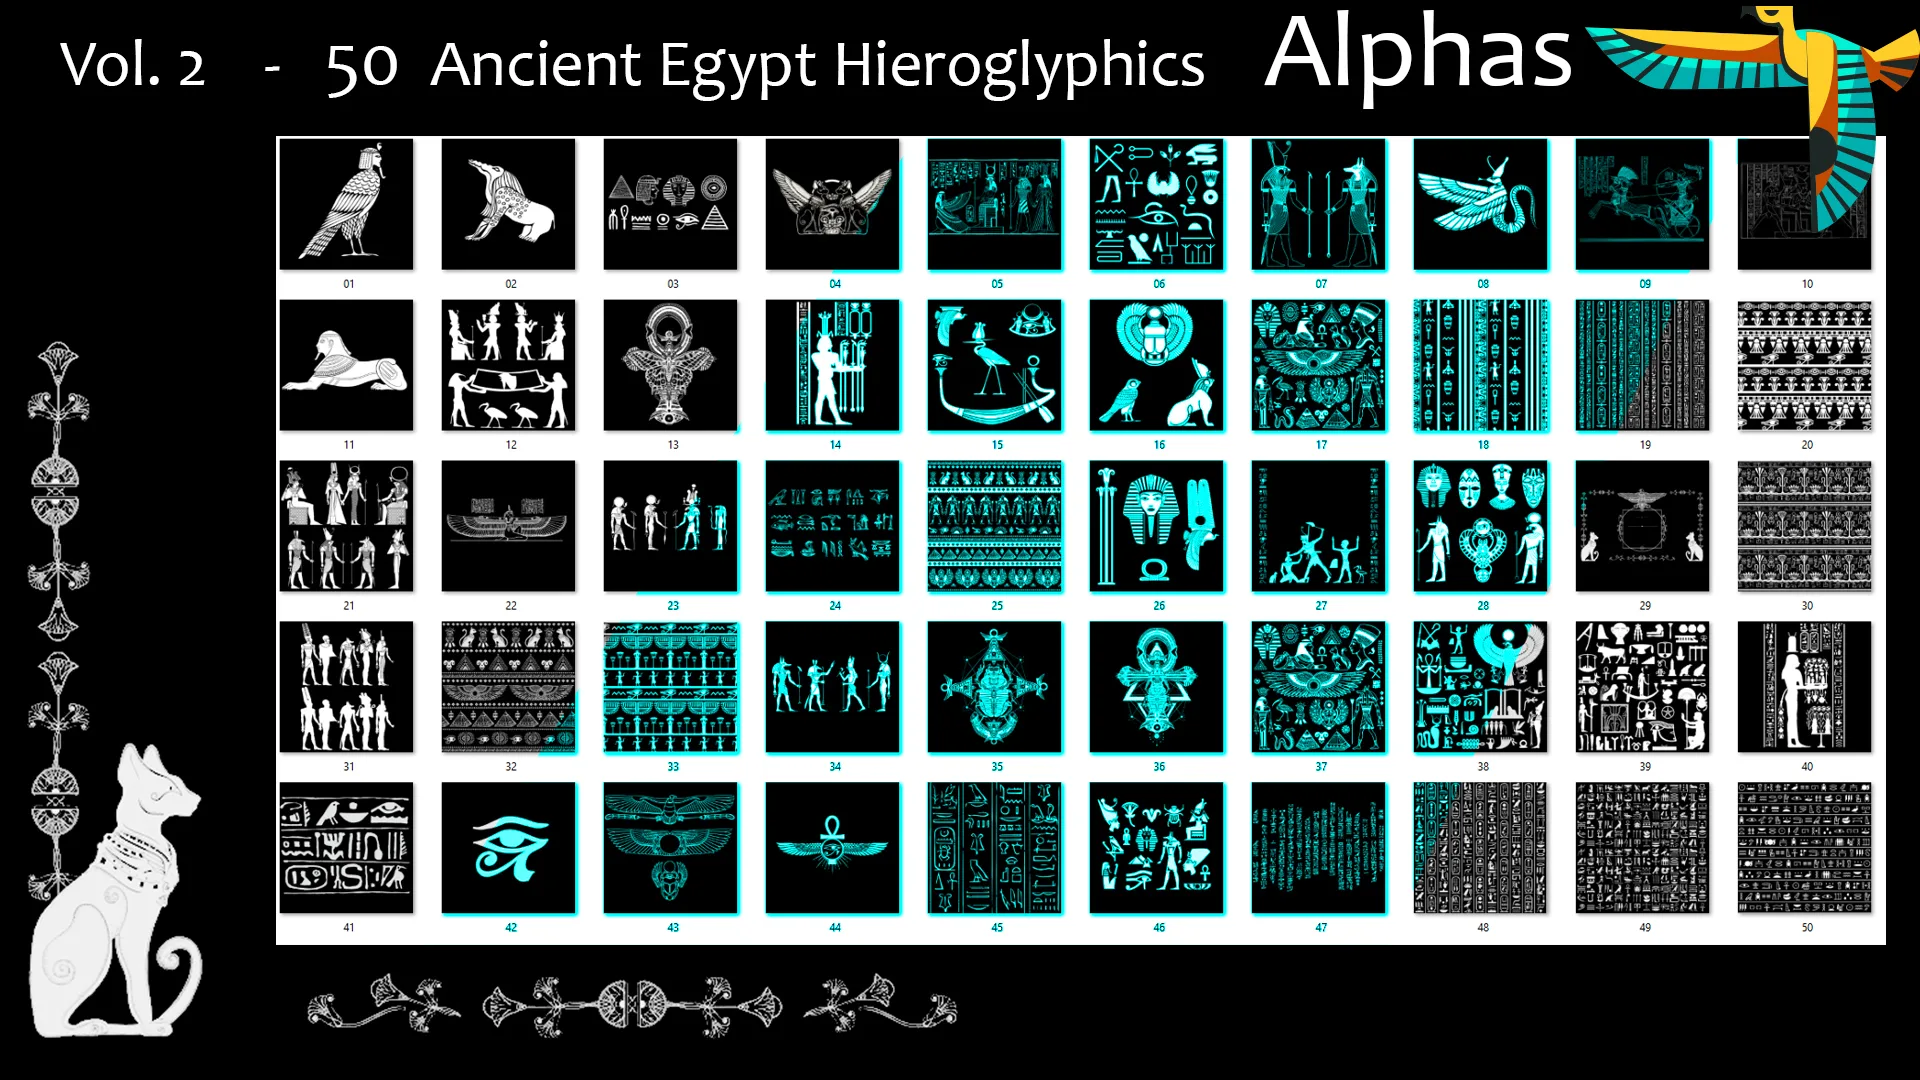 Vol. 2 - 50 Ancient Egypt Hieroglyphics Alphas